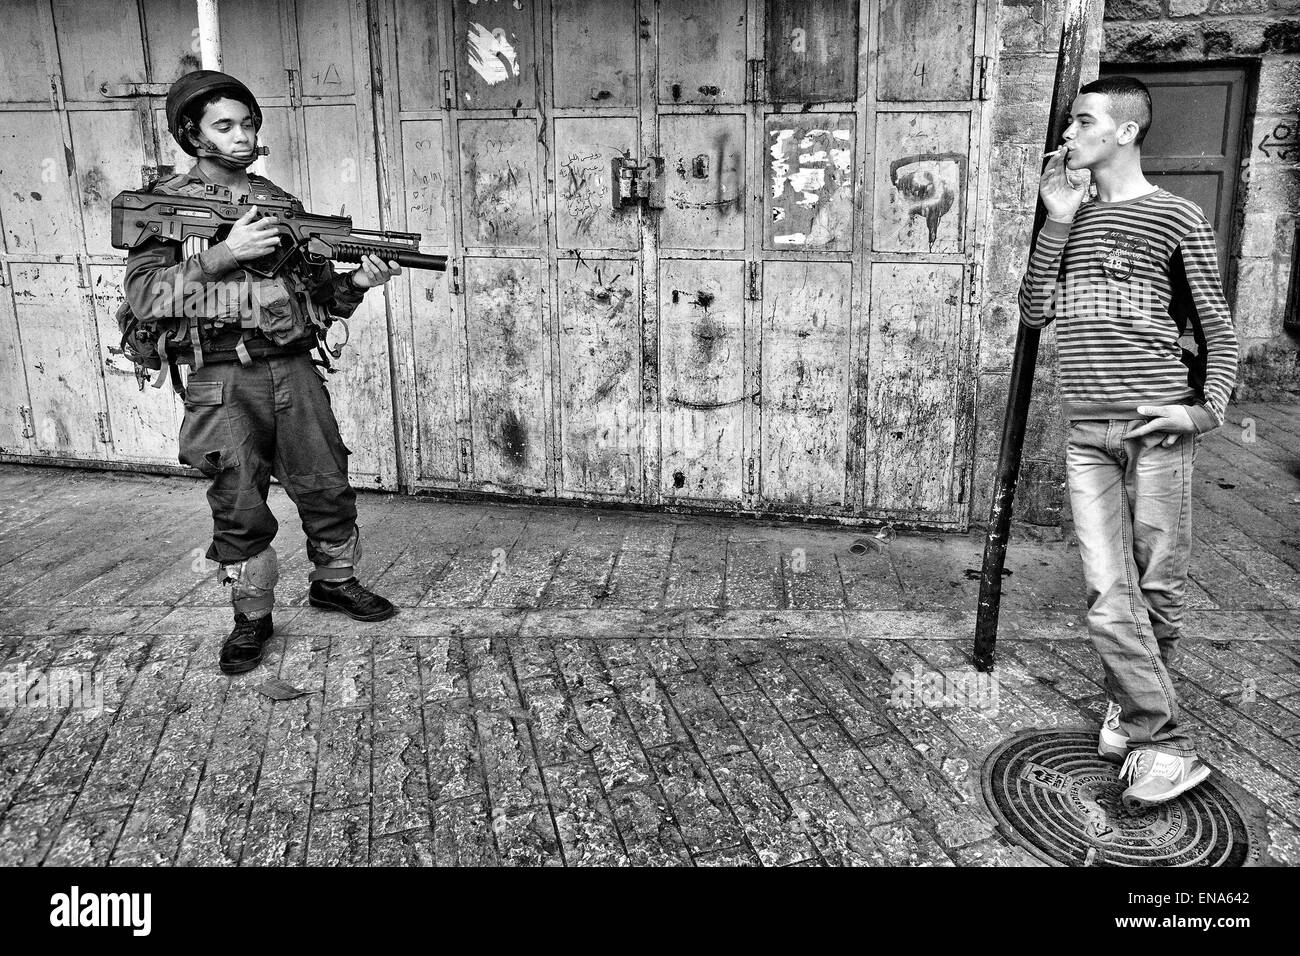 Hébron, en Palestine. Mar 19, 2011. Un garçon palestinien railleries un jeune, lourdement armés encore soldat israélien à Hébron. Mar. 19, 2011. Cisjordanie, Palestine. © Gabriel Romero/ZUMA/Alamy Fil Live News Banque D'Images